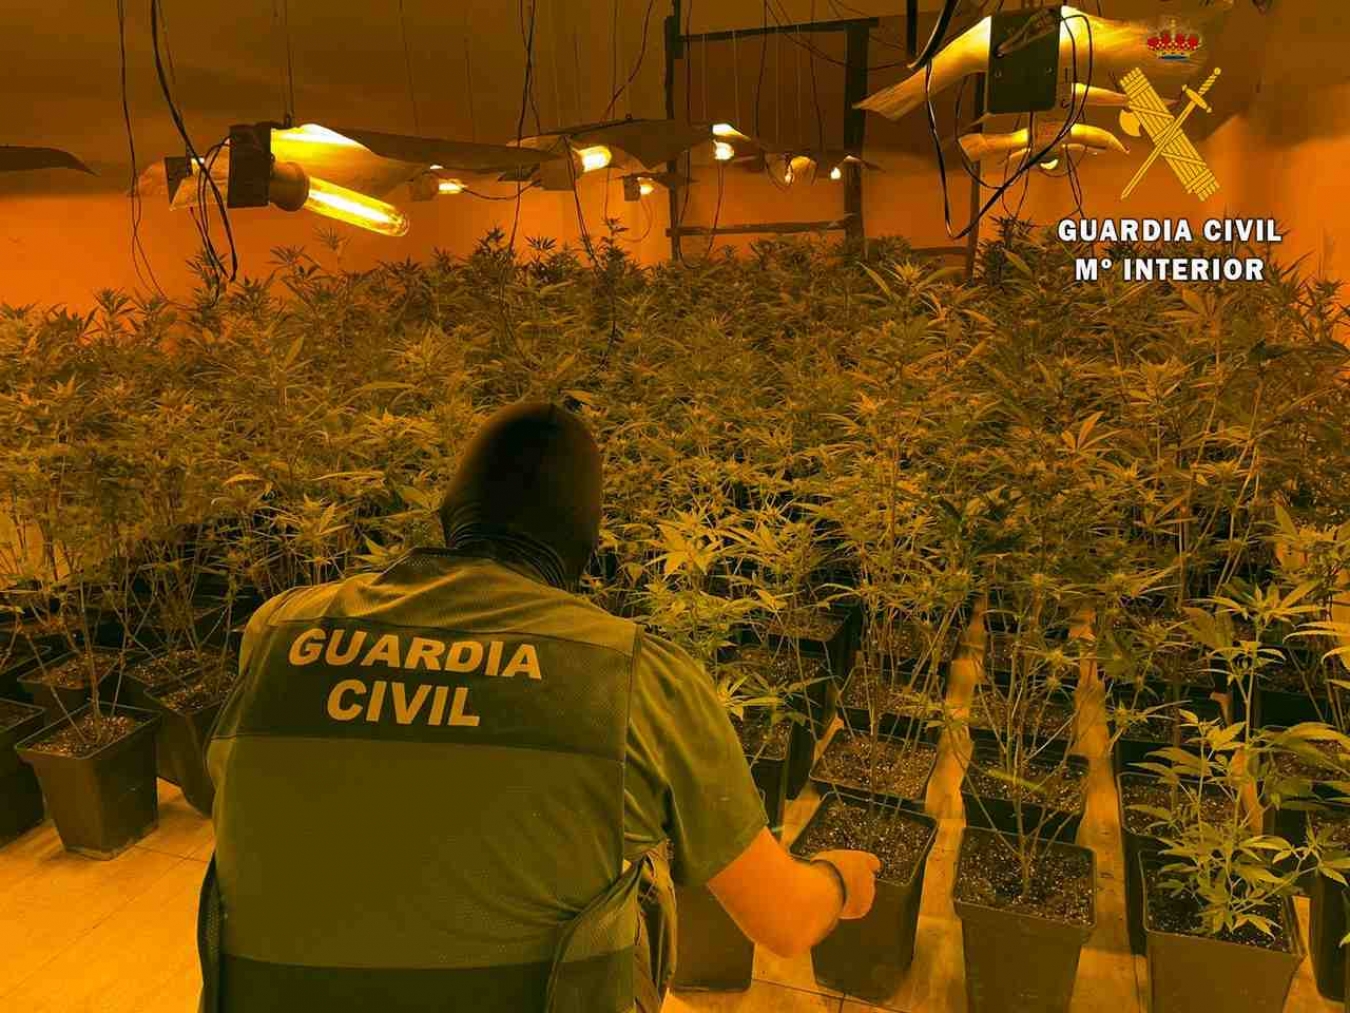 La Guardia Civil interviene cerca de 500 plantas de marihuana y neutraliza 80 enganches fraudulentos a la red de suministro eléctrico 